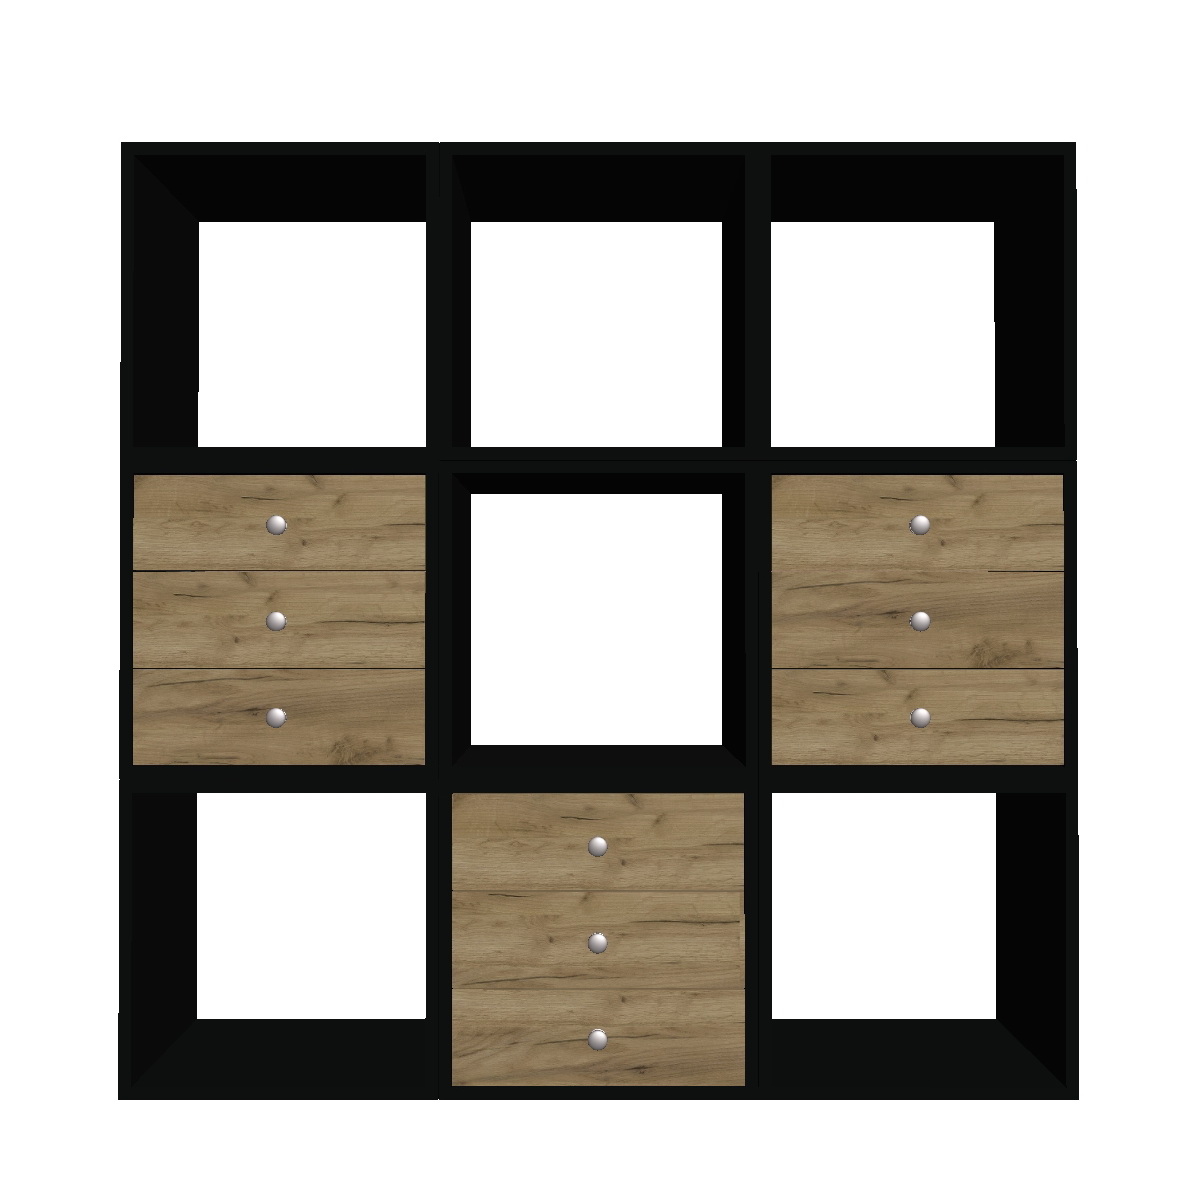 Секция мебельная - куб, Корпус Черный, без задней панели, 400мм х 400мм х 400мм - Фото 0